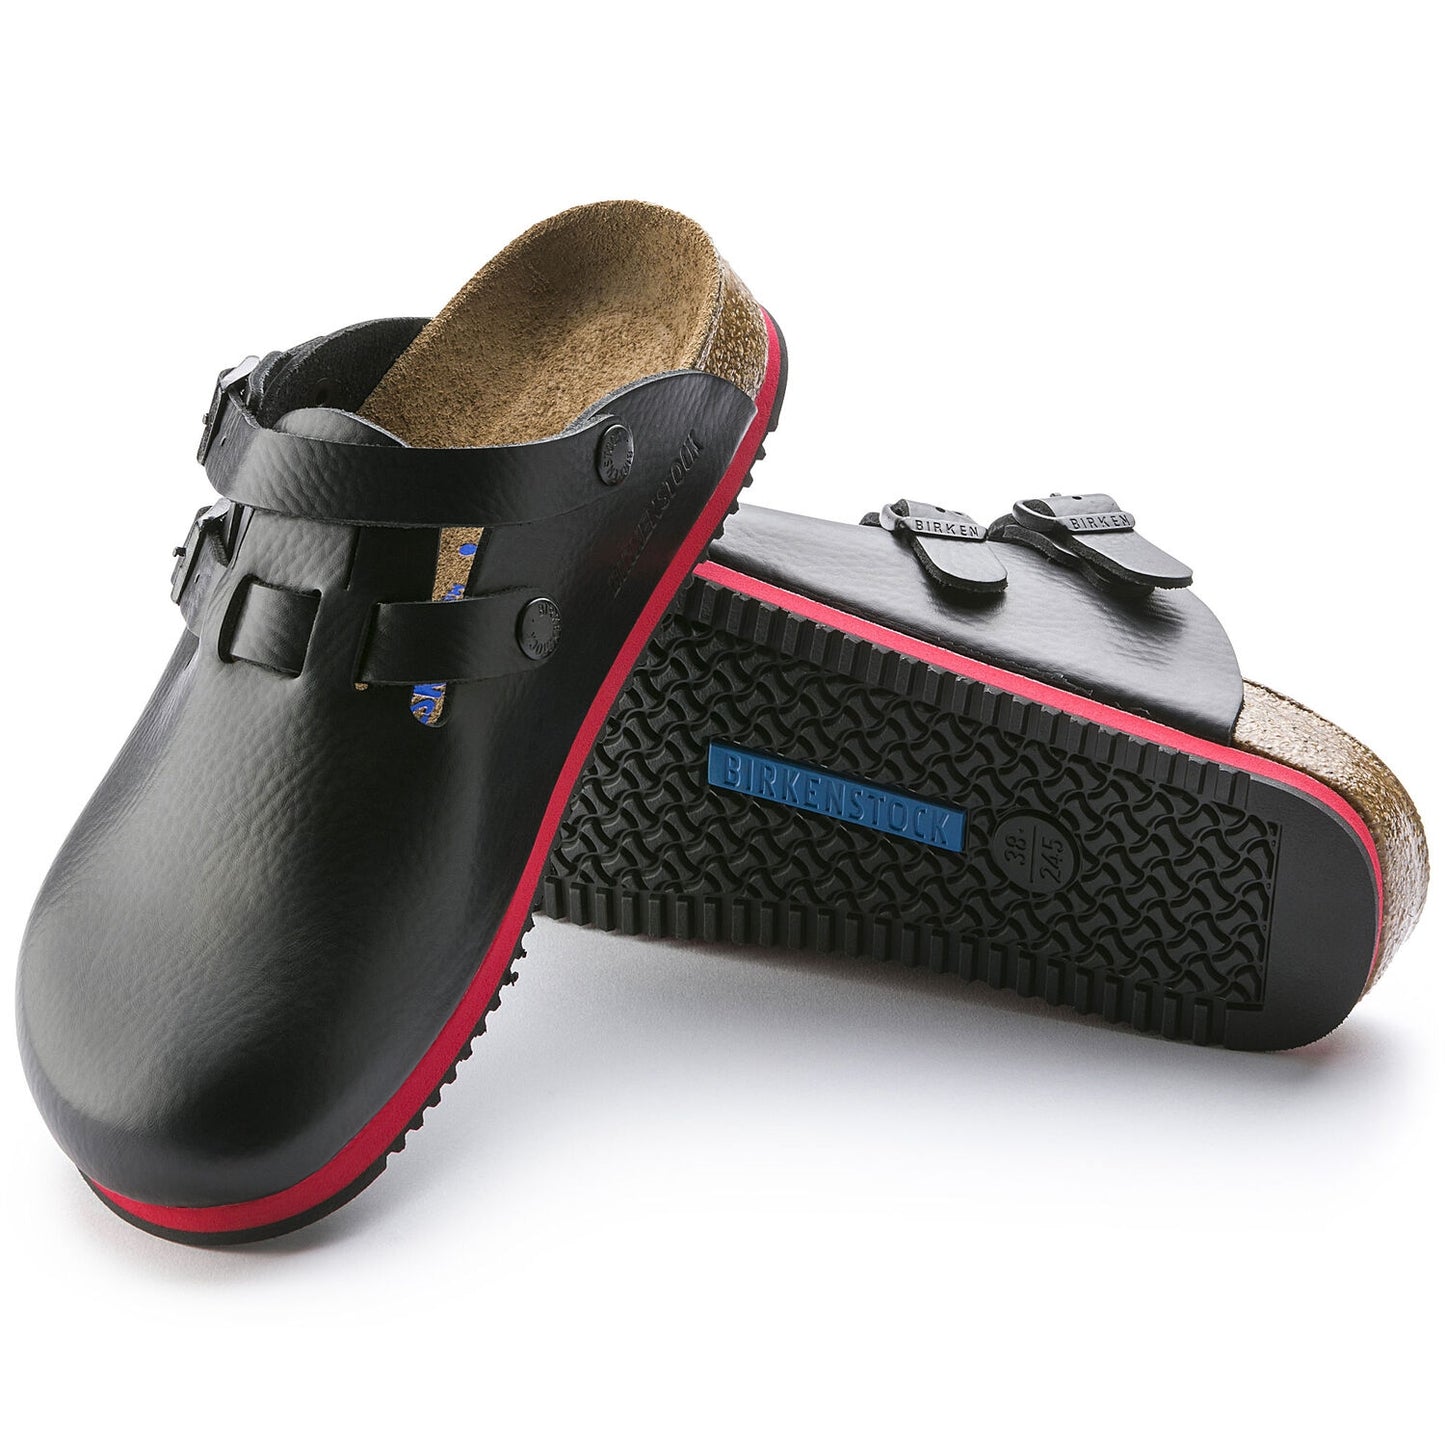 Birkenstock Nursing Shoes - Kay Natural Leather